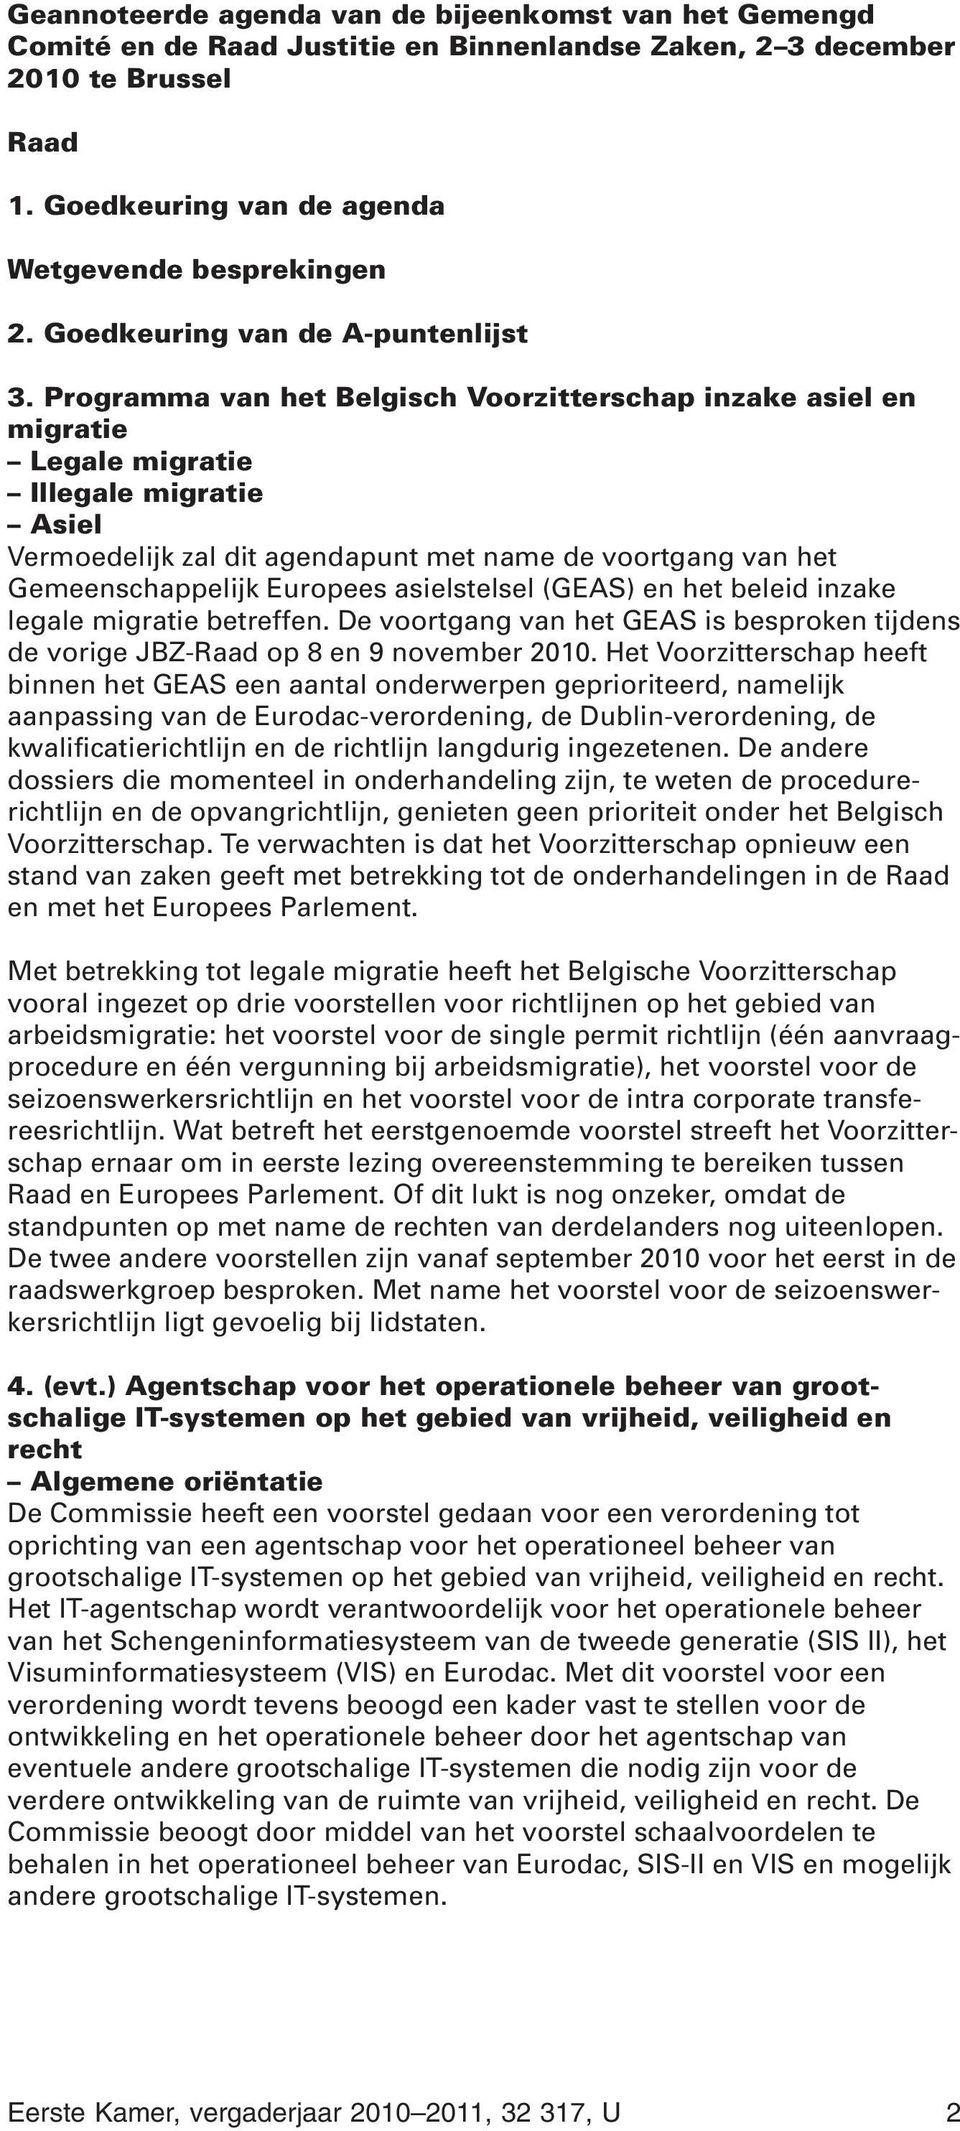 Programma van het Belgisch Voorzitterschap inzake asiel en migratie Legale migratie Illegale migratie Asiel Vermoedelijk zal dit agendapunt met name de voortgang van het Gemeenschappelijk Europees